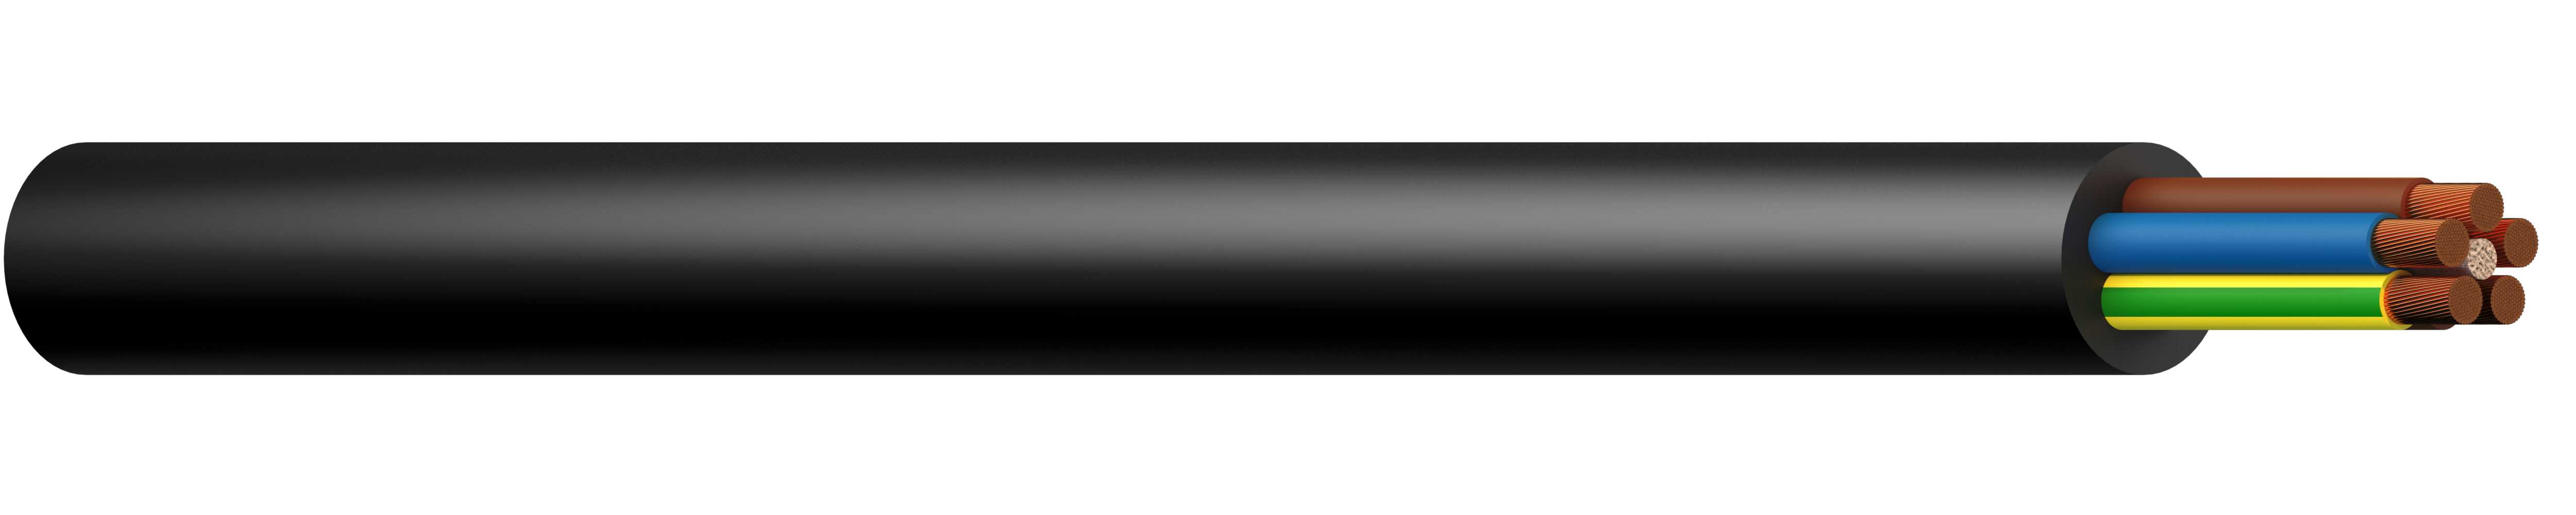 Draka - H07RN-F 4G1,5 mm² Sort  Gummikabel